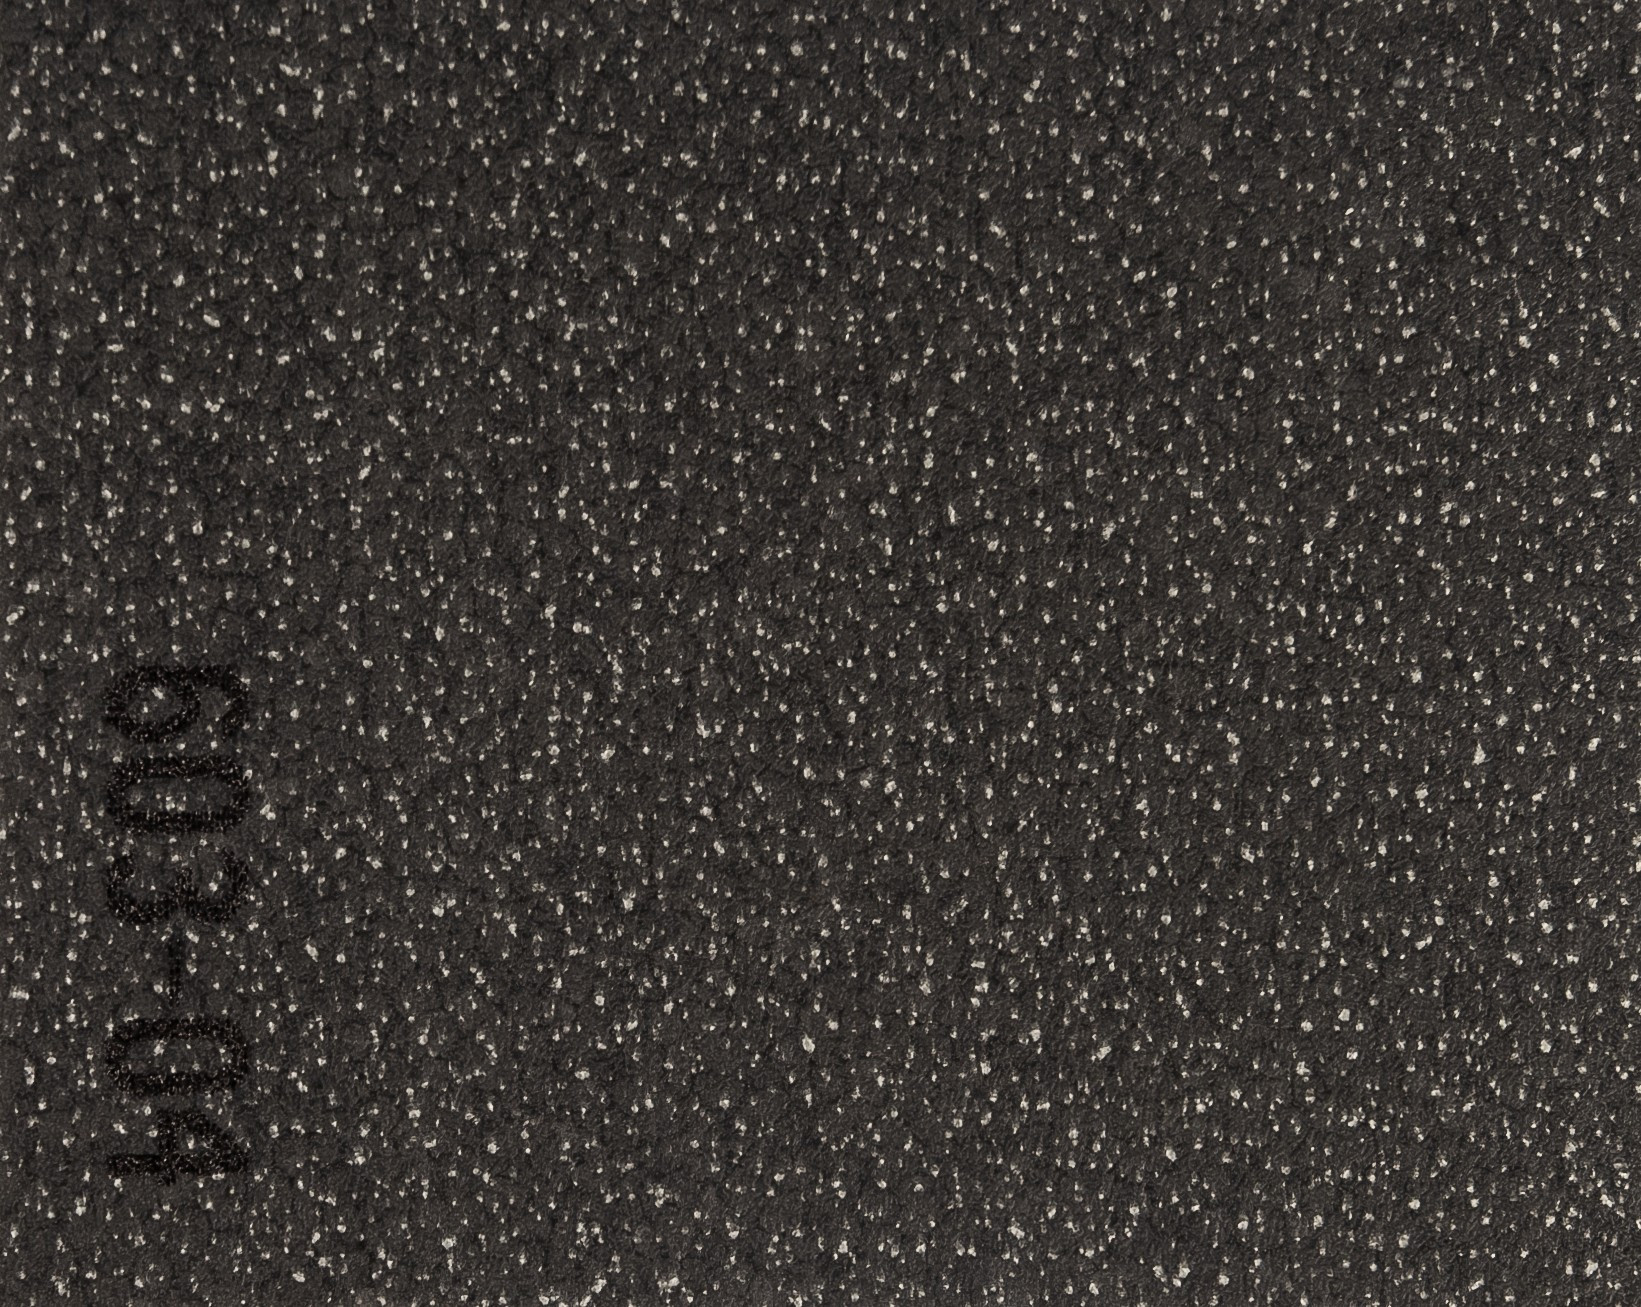 AKCE: 200x925 cm PVC podlaha Flexar PUR 603-04 černá - Rozměr na míru cm Lentex